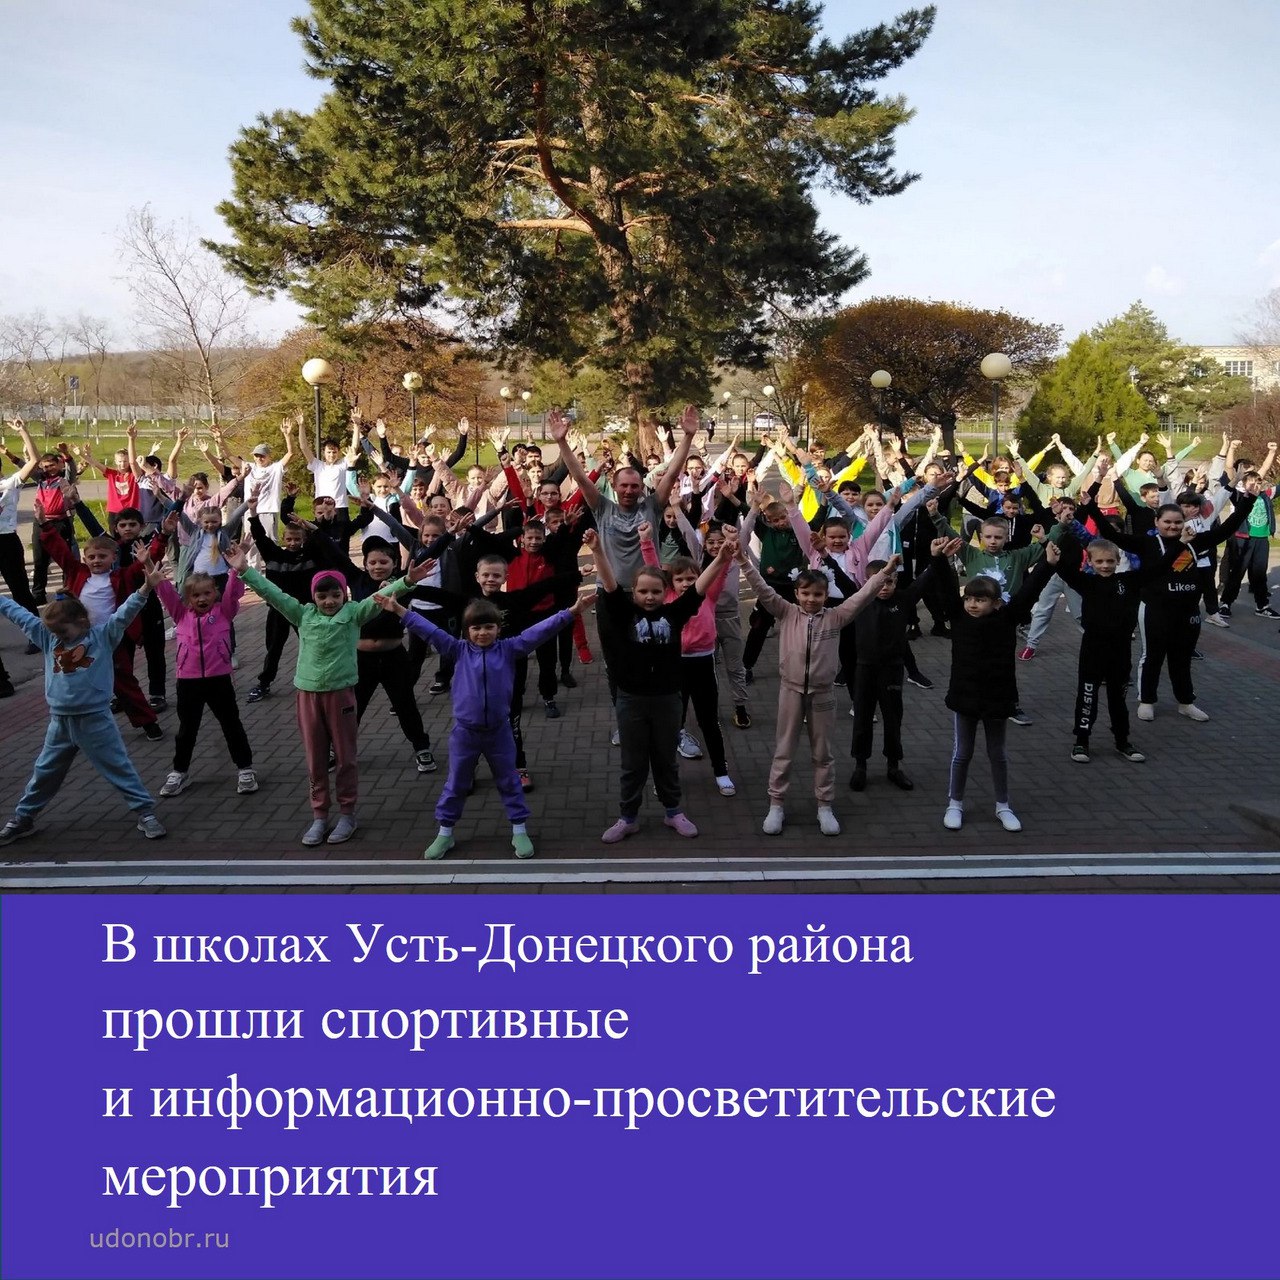 В школах Усть-Донецкого района прошли спортивные и информационно-просветительские мероприятия